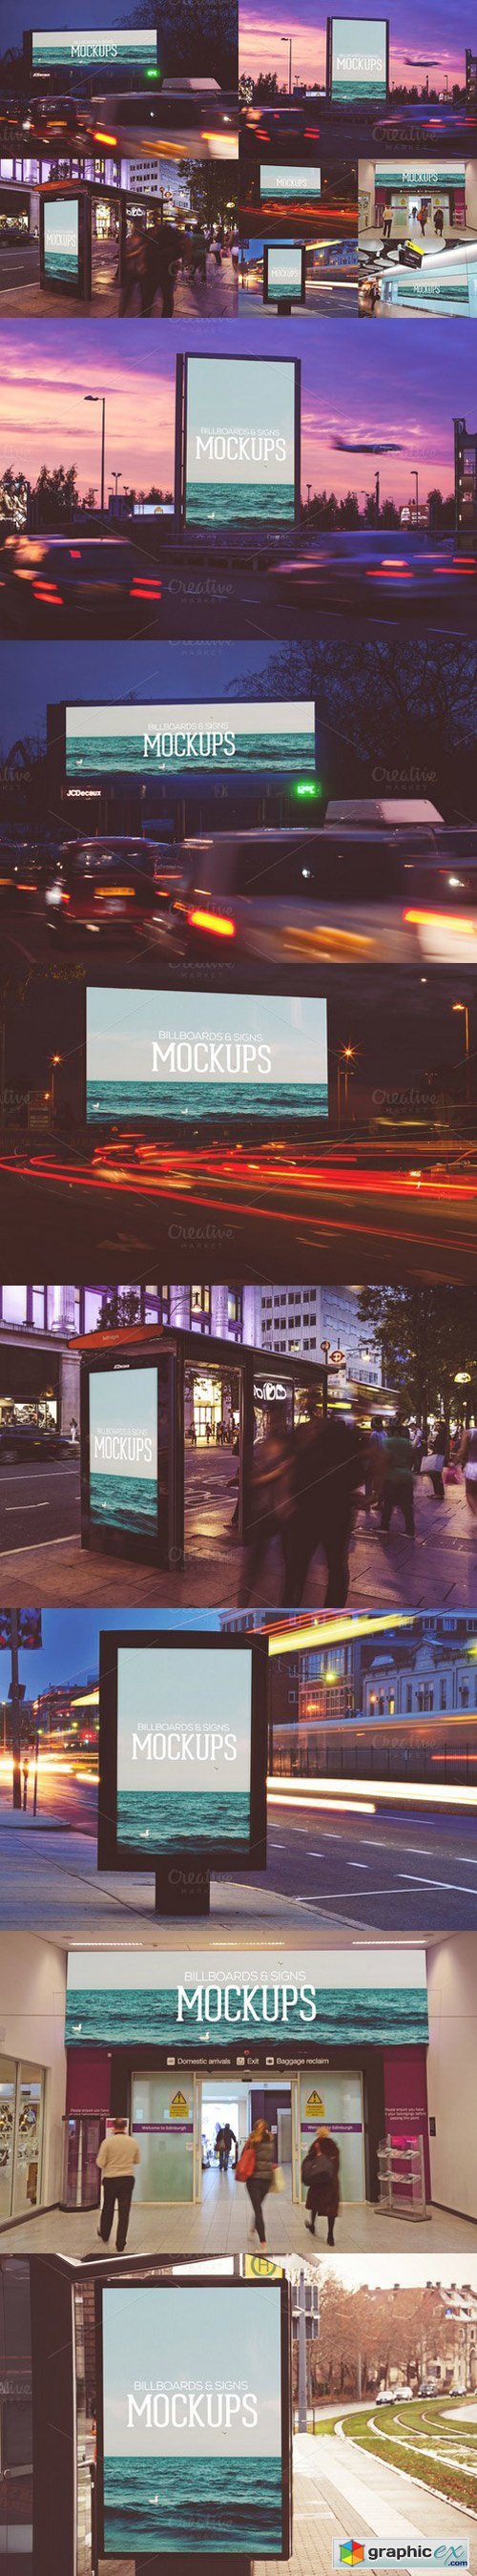 Billboards - Mockups V02